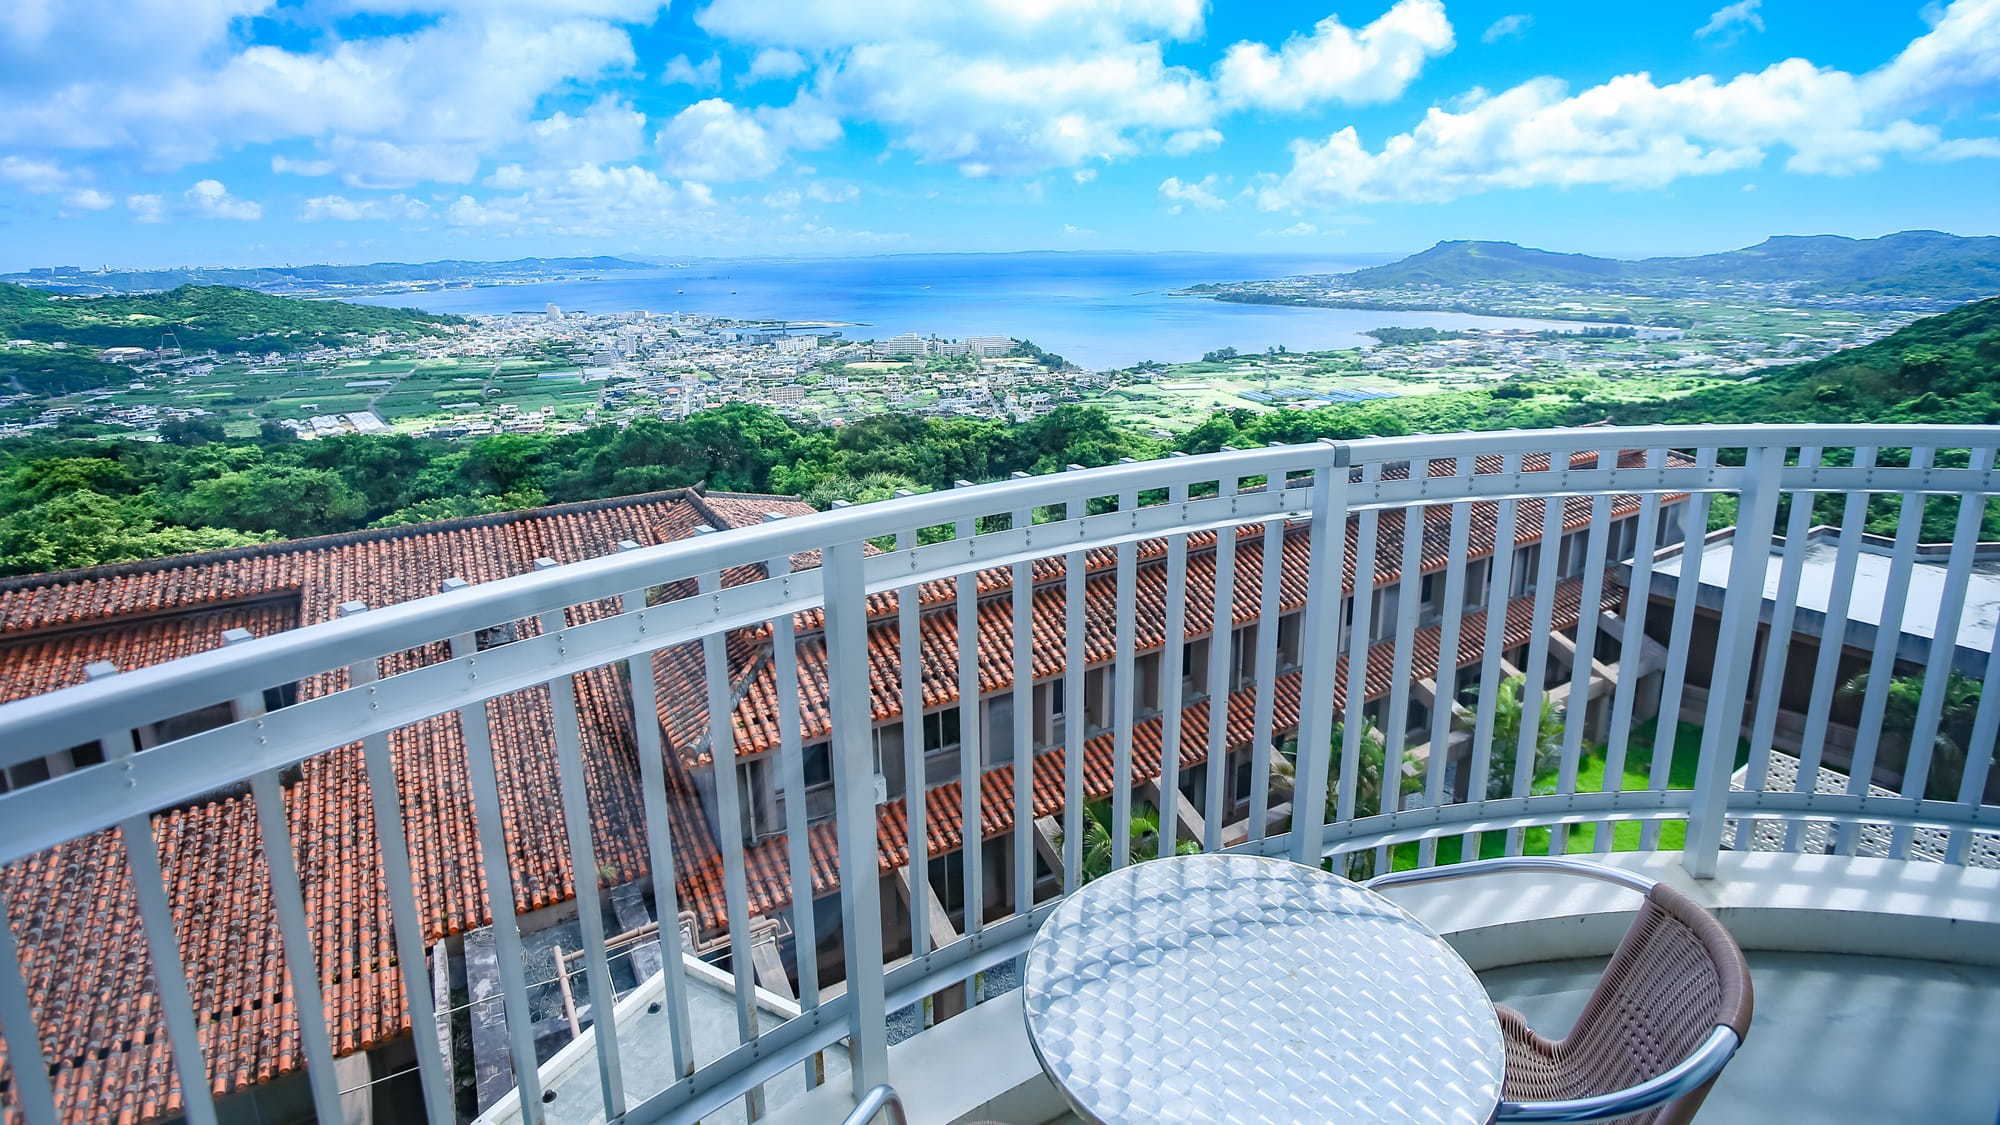 佐敷の丘から見渡す景色は沖縄をより近くに感じることができます